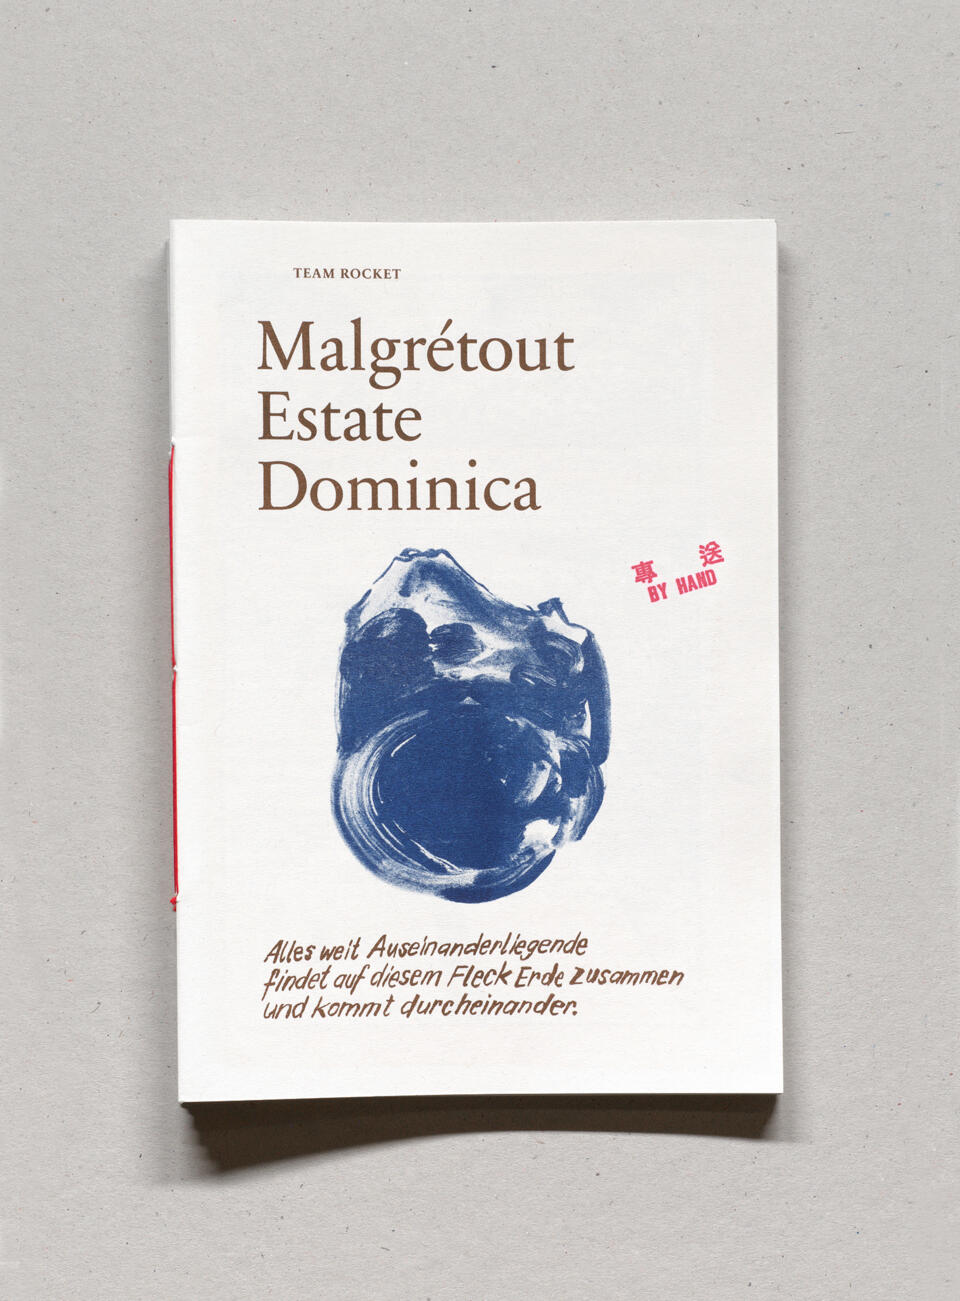 Malgretout Estate Dominica